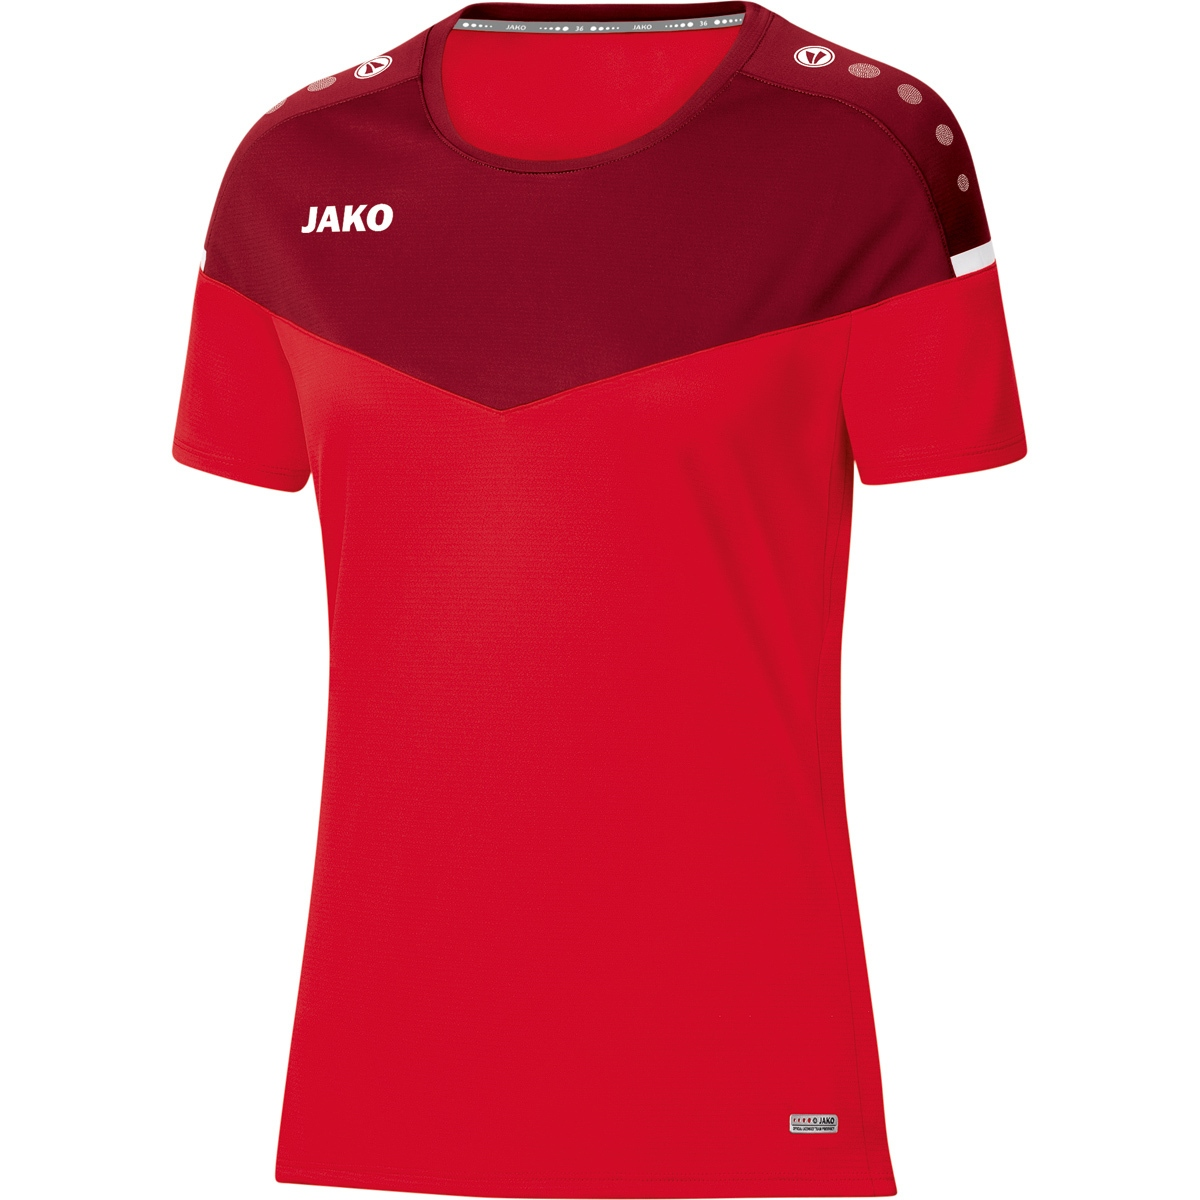 T-Shirt 2.0 rot/weinrot, Champ 6120 Damen, 36, JAKO Gr.